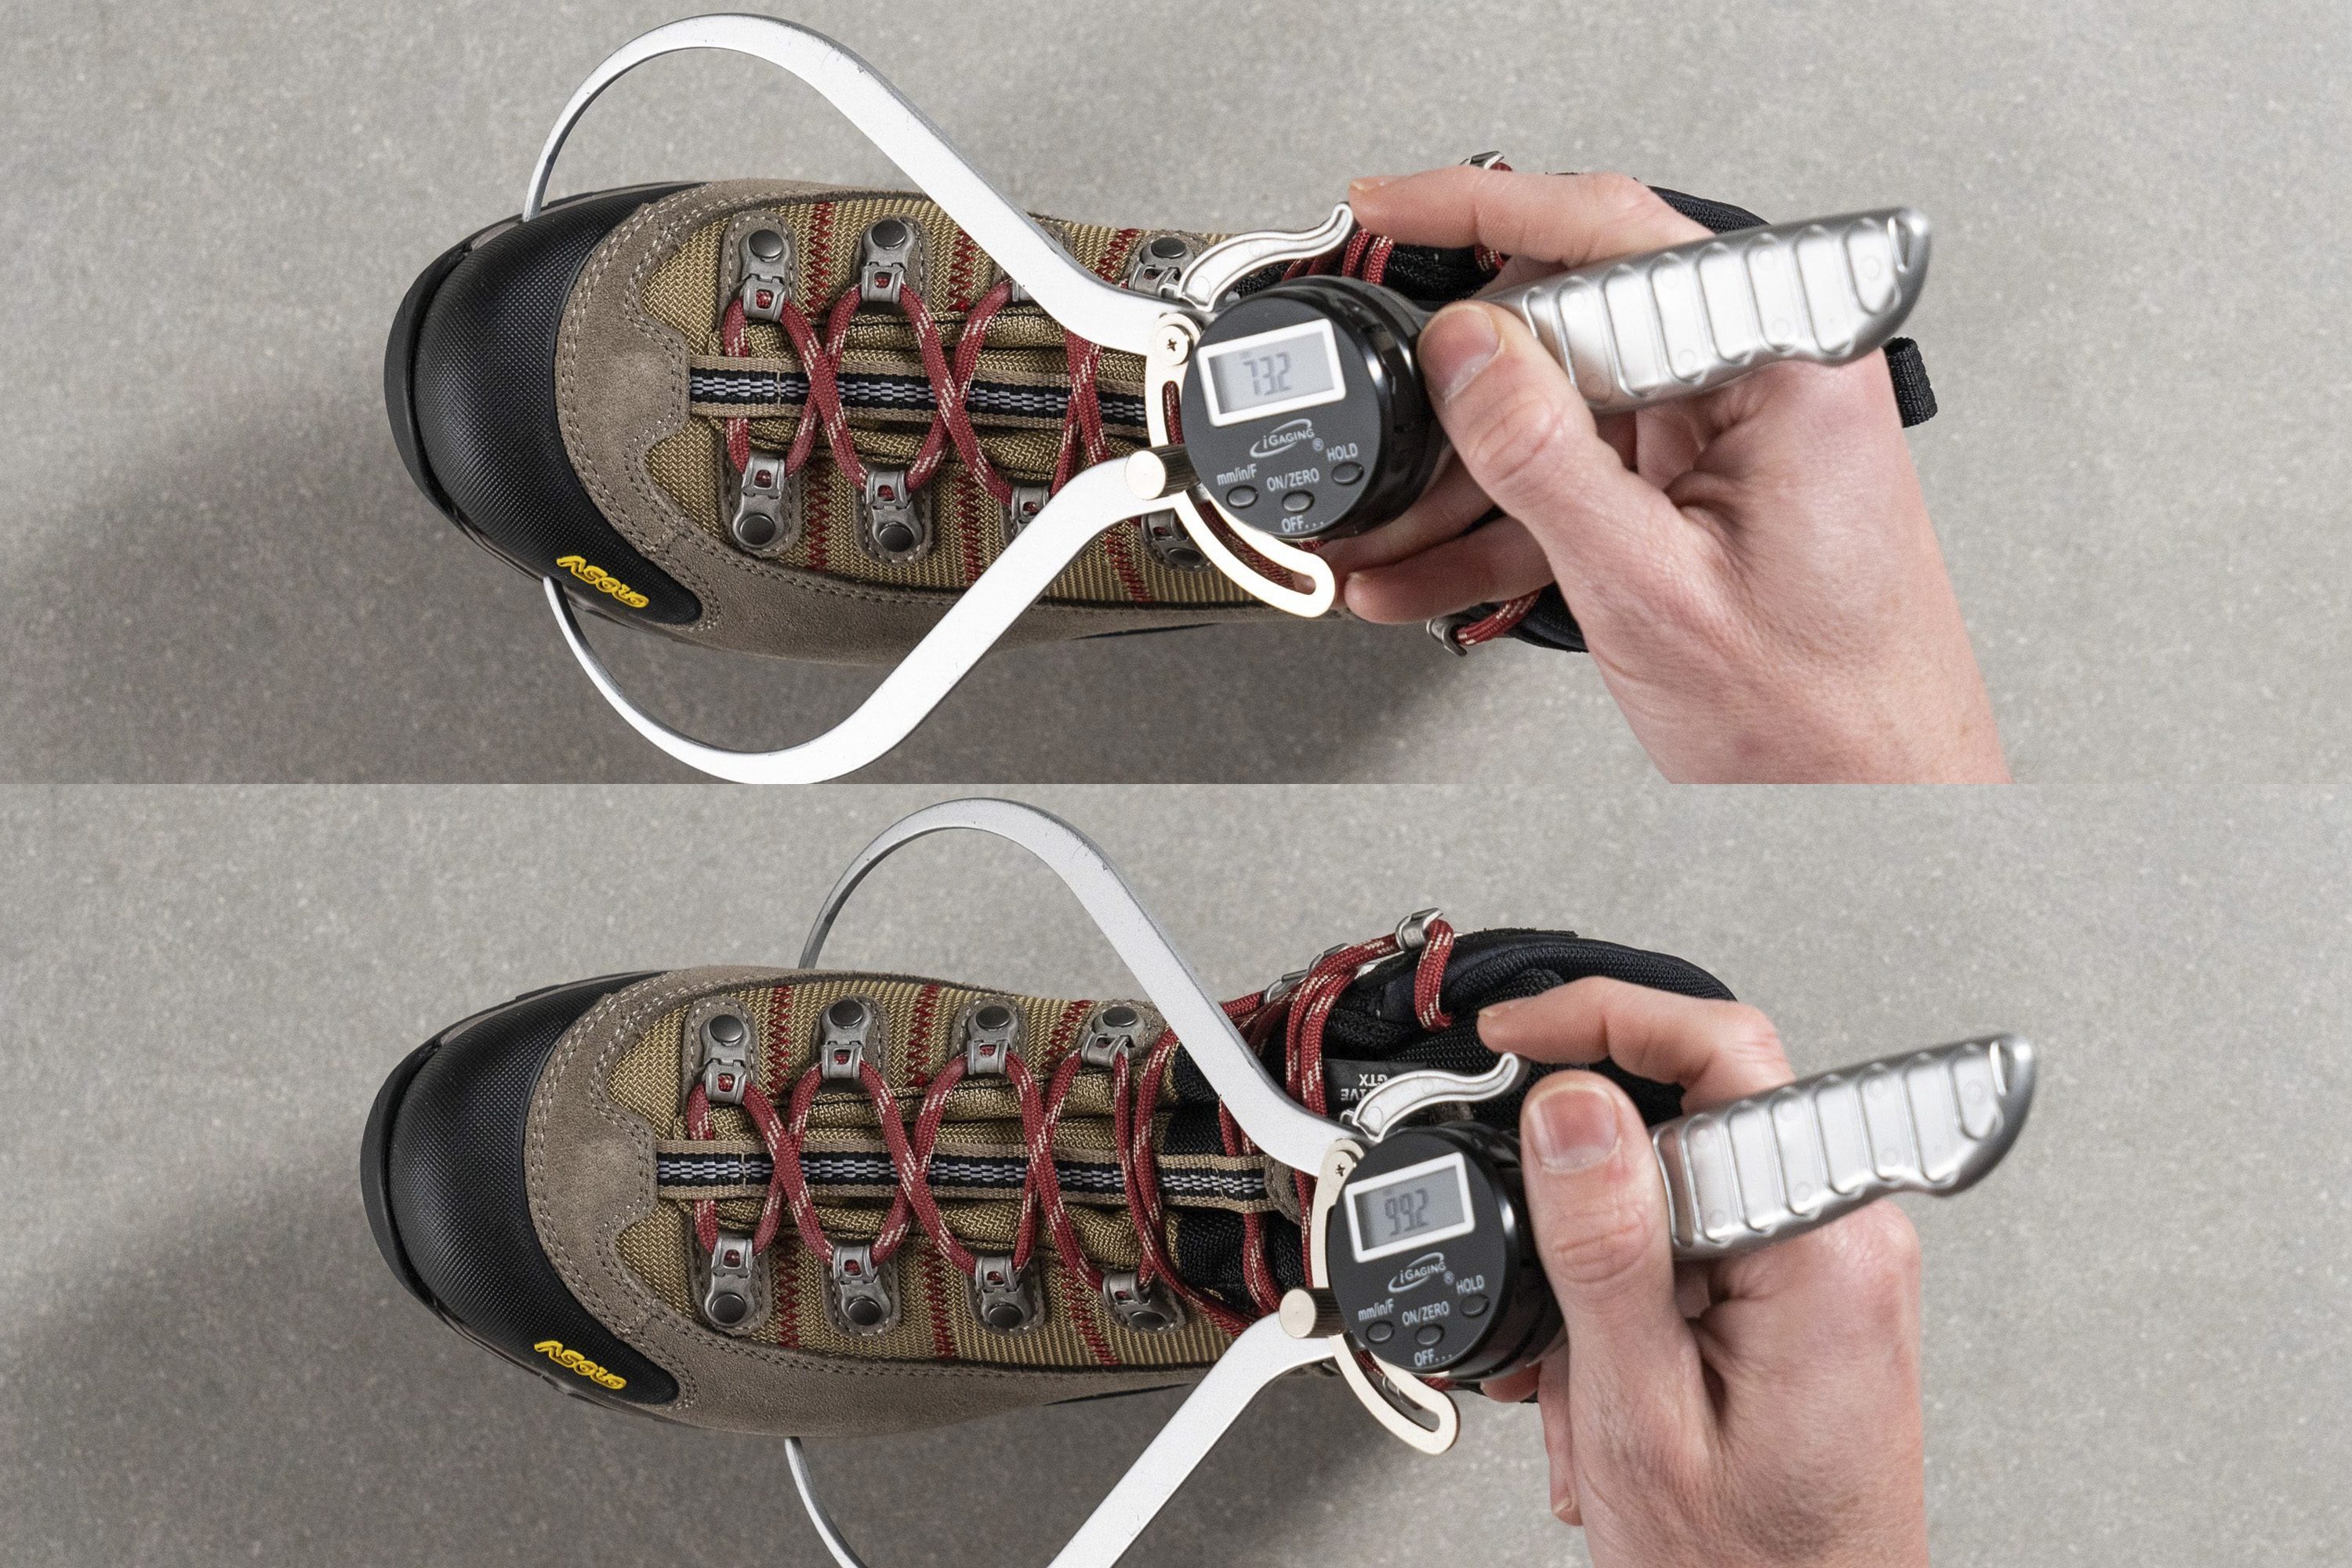 mediciones en laboratorio de la anchura de la puntera de botas de senderismo de invierno